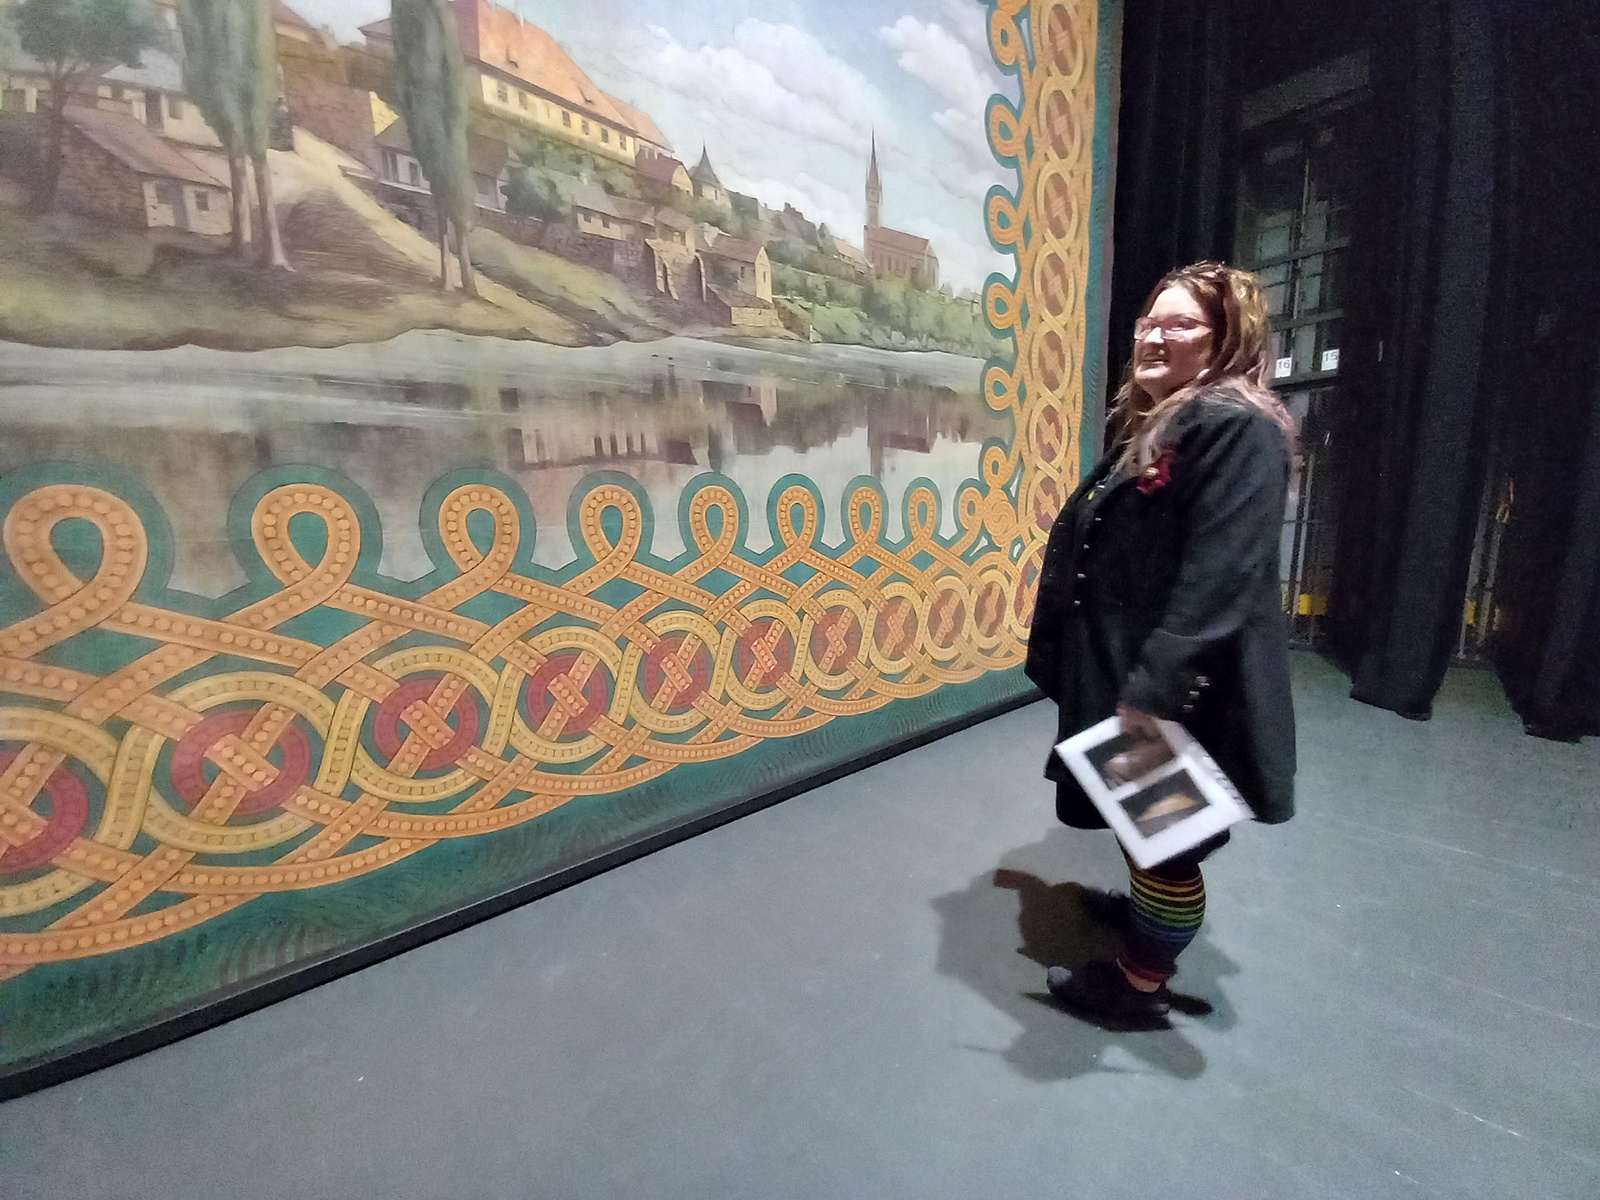 Zrestaurovaná opona je zpátky v Dusíkově divadle, čeká ji slavnostní  odhalení - Kladenský deník